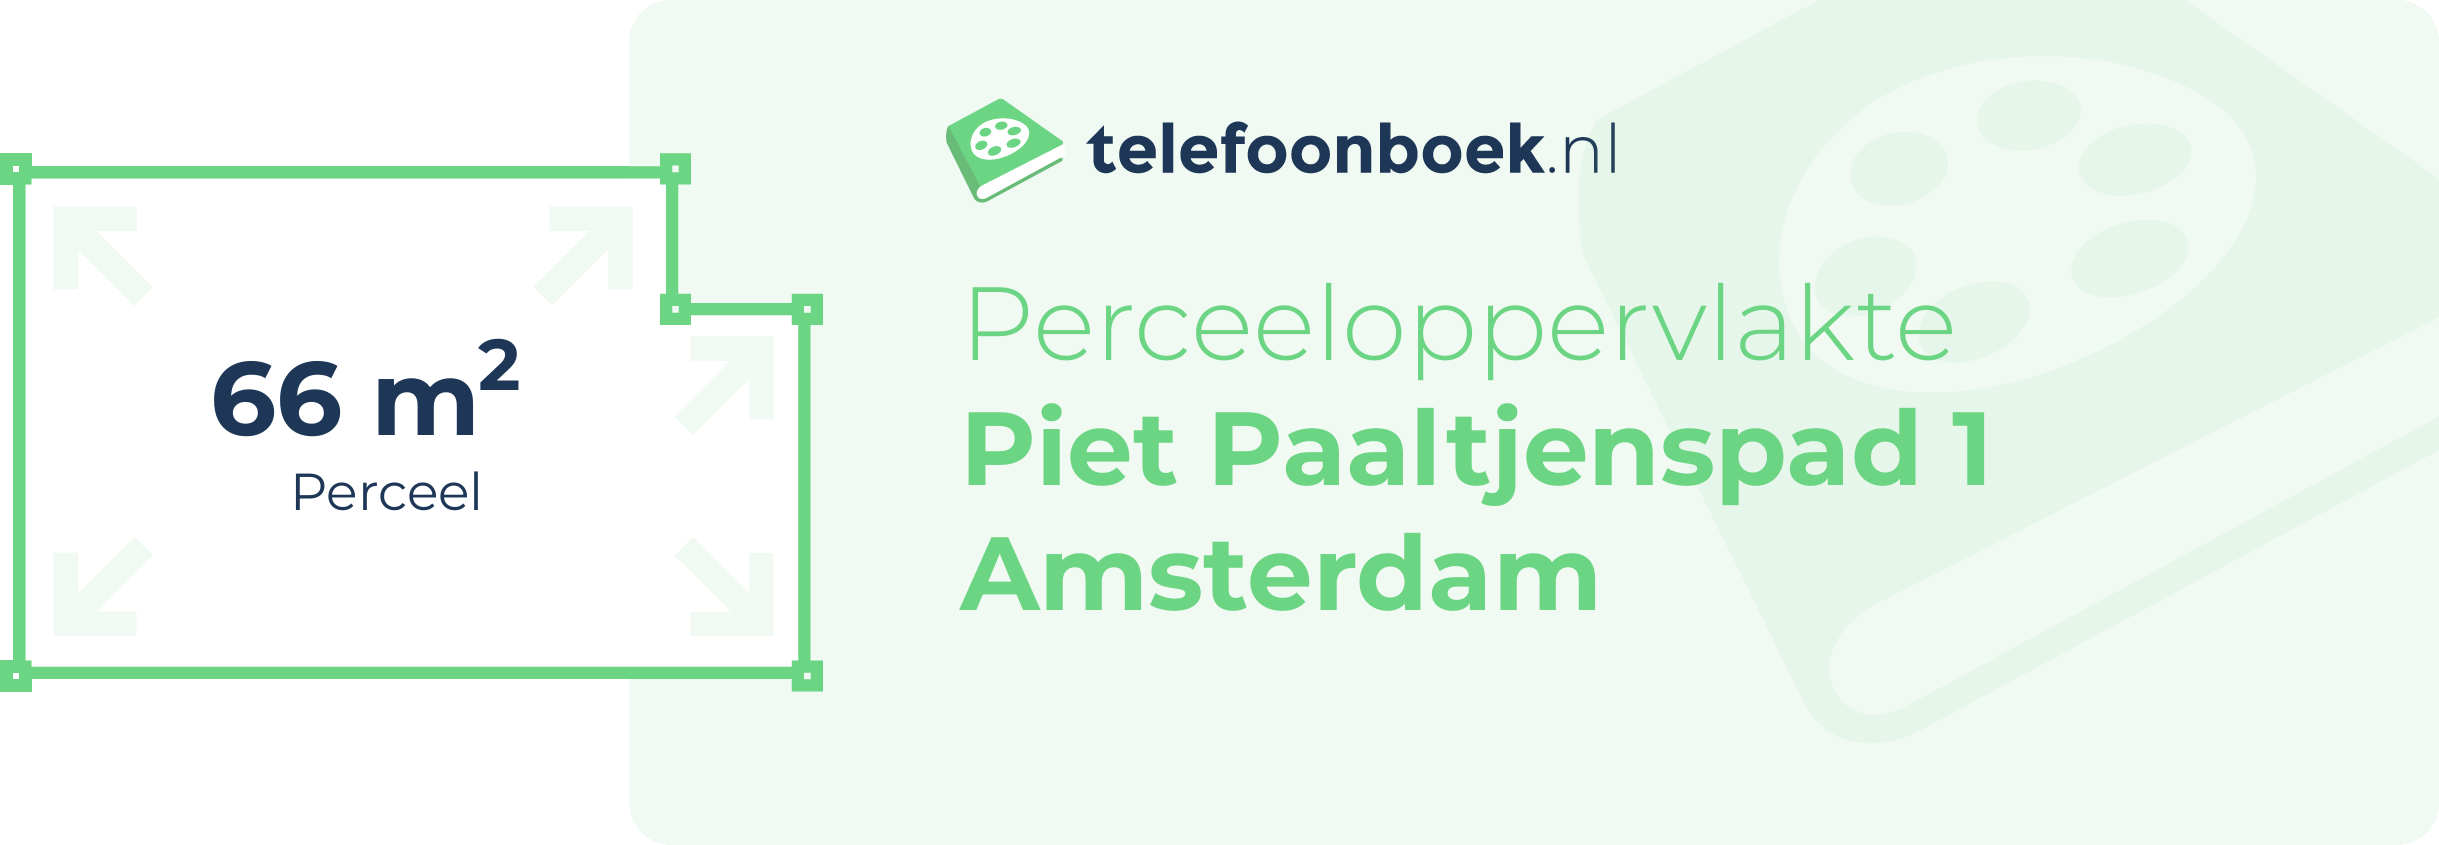 Perceeloppervlakte Piet Paaltjenspad 1 Amsterdam